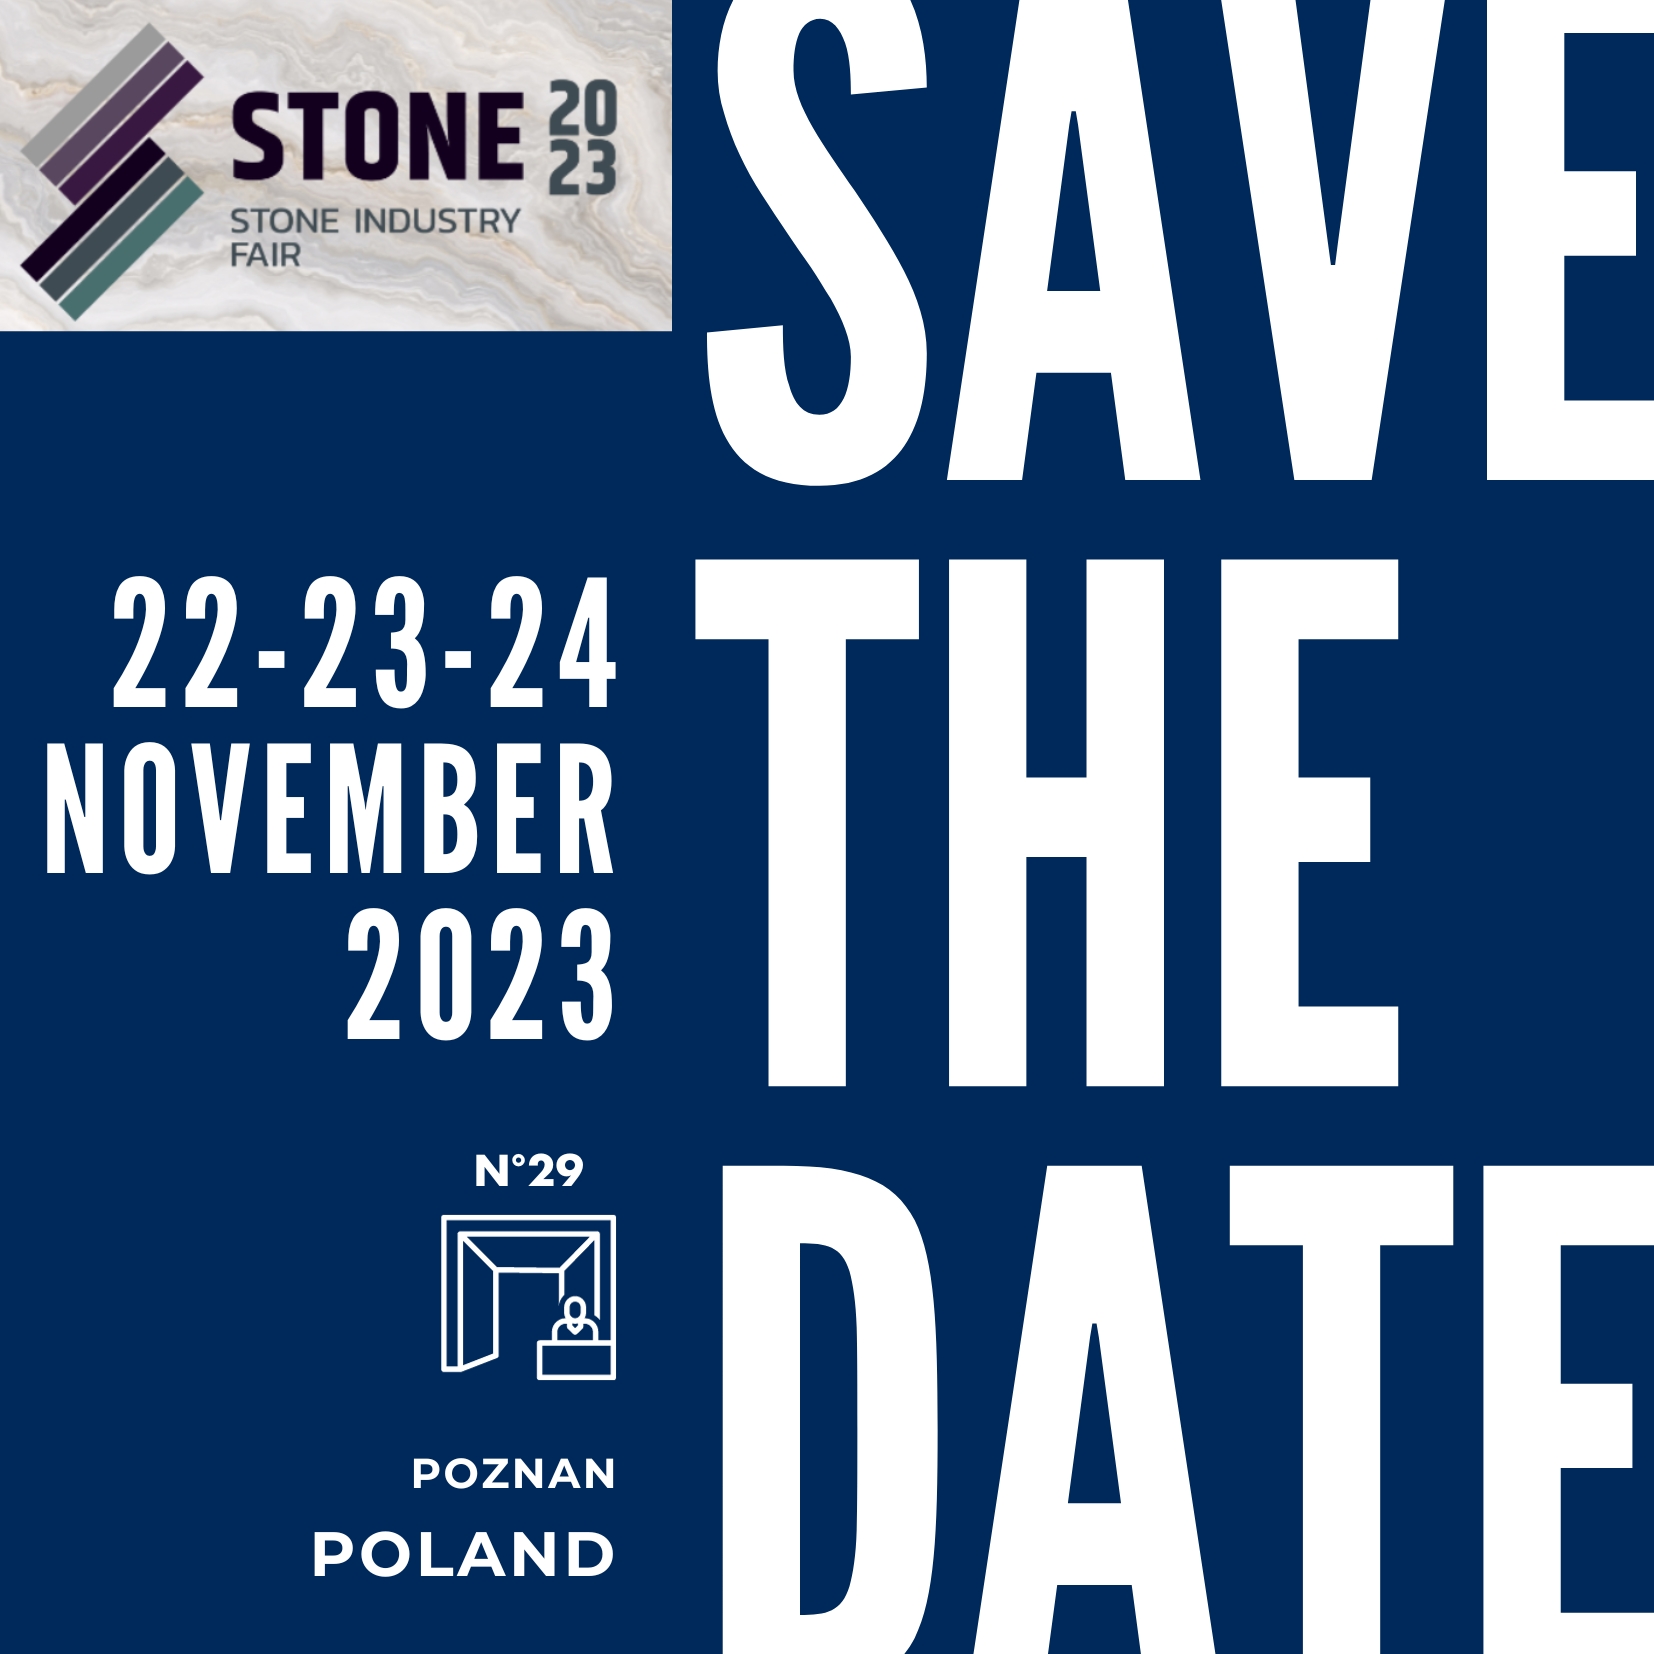 Thibaut sera présent au salon Stone Fair de Poznan en Pologne